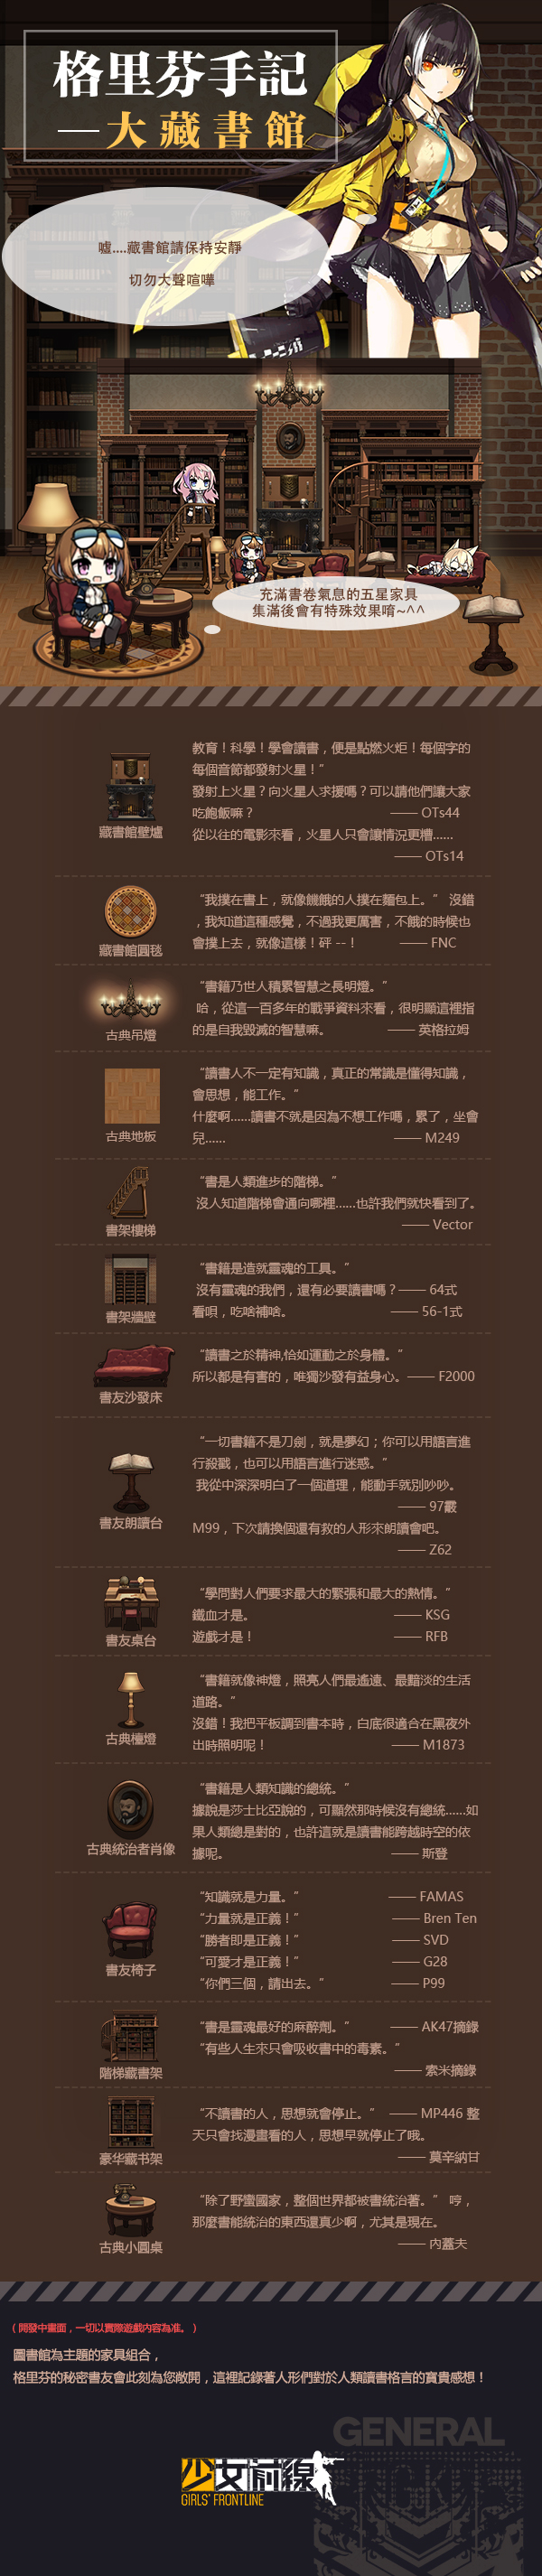 【情報】兼職俱樂部主題家具 — 大藏書館